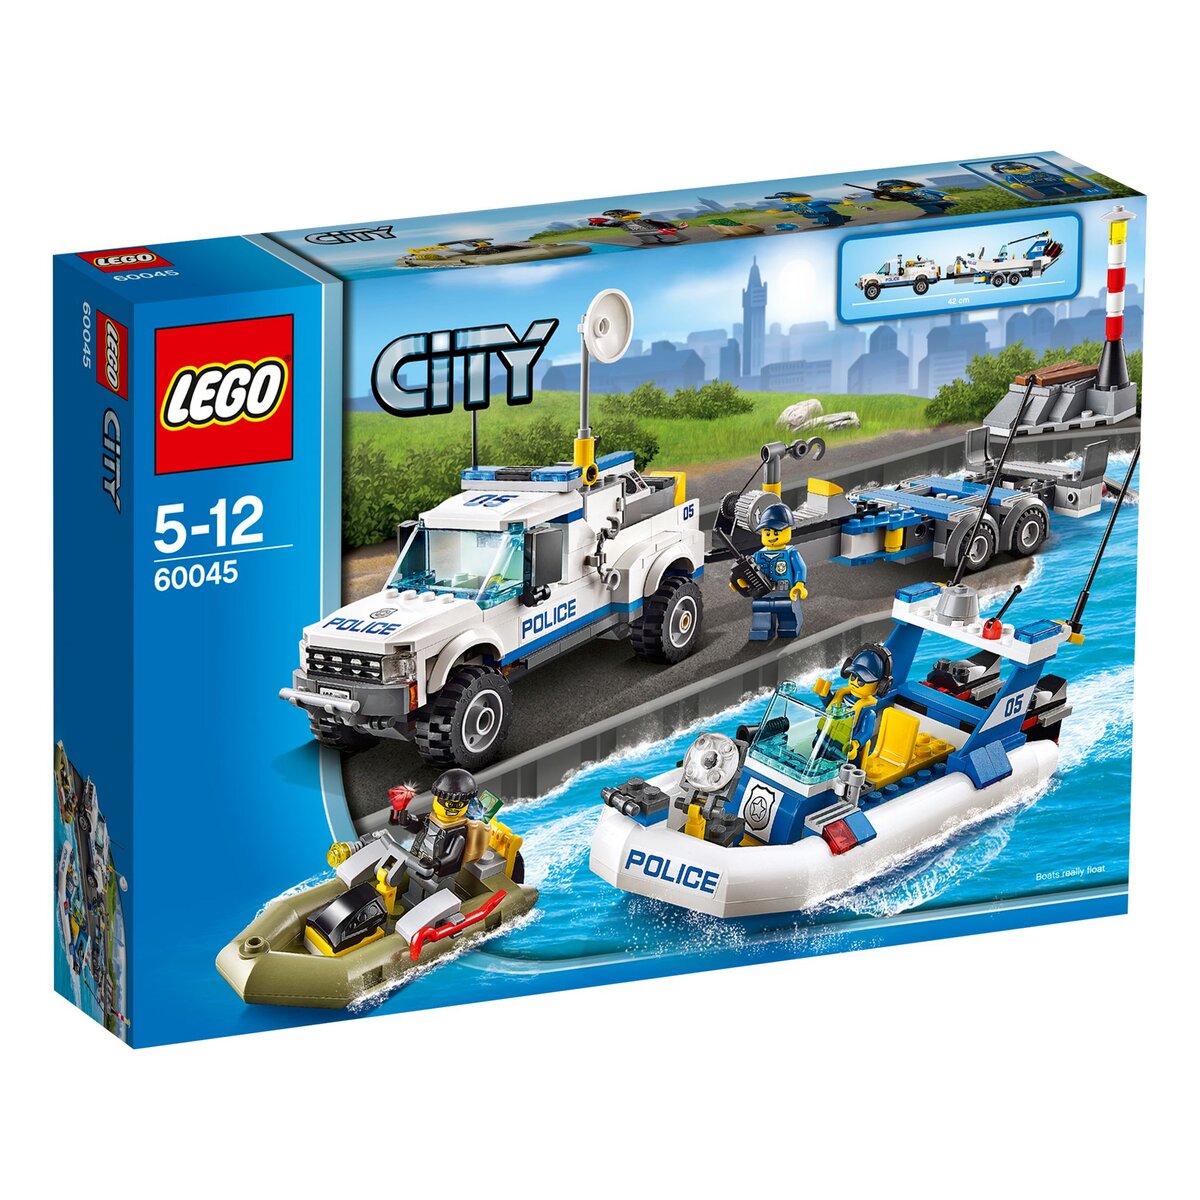 LEGO City 60045